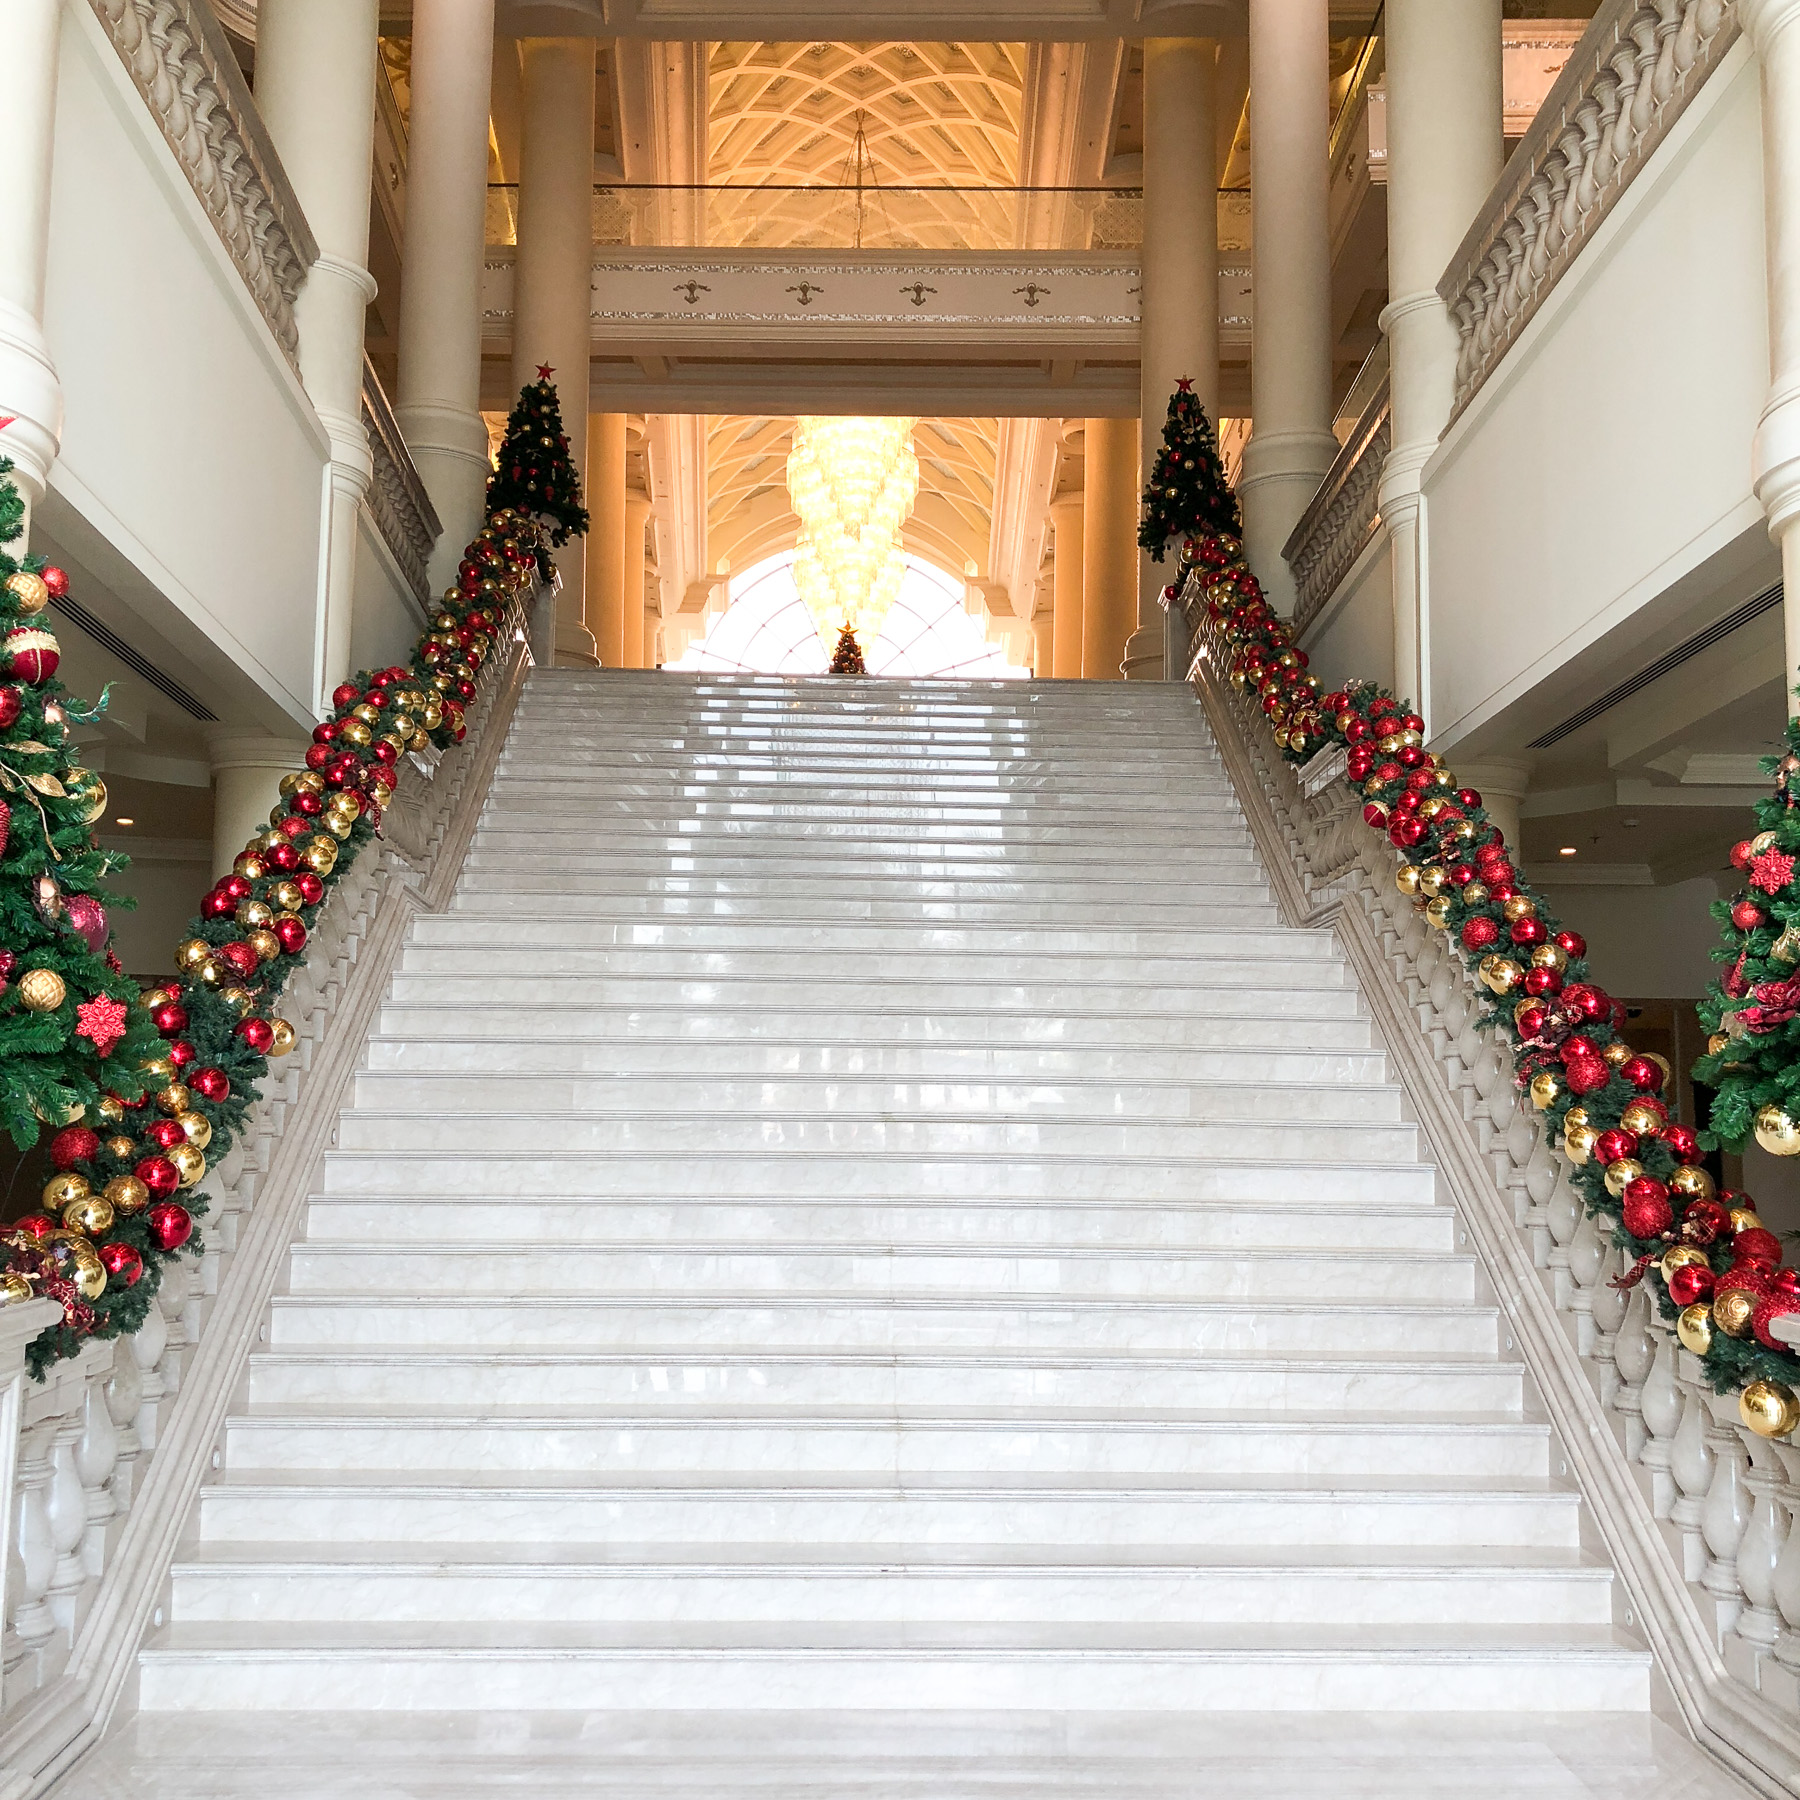 Christmas in the UAE - The Ritz Carlton Christmas Tree-2.jpg